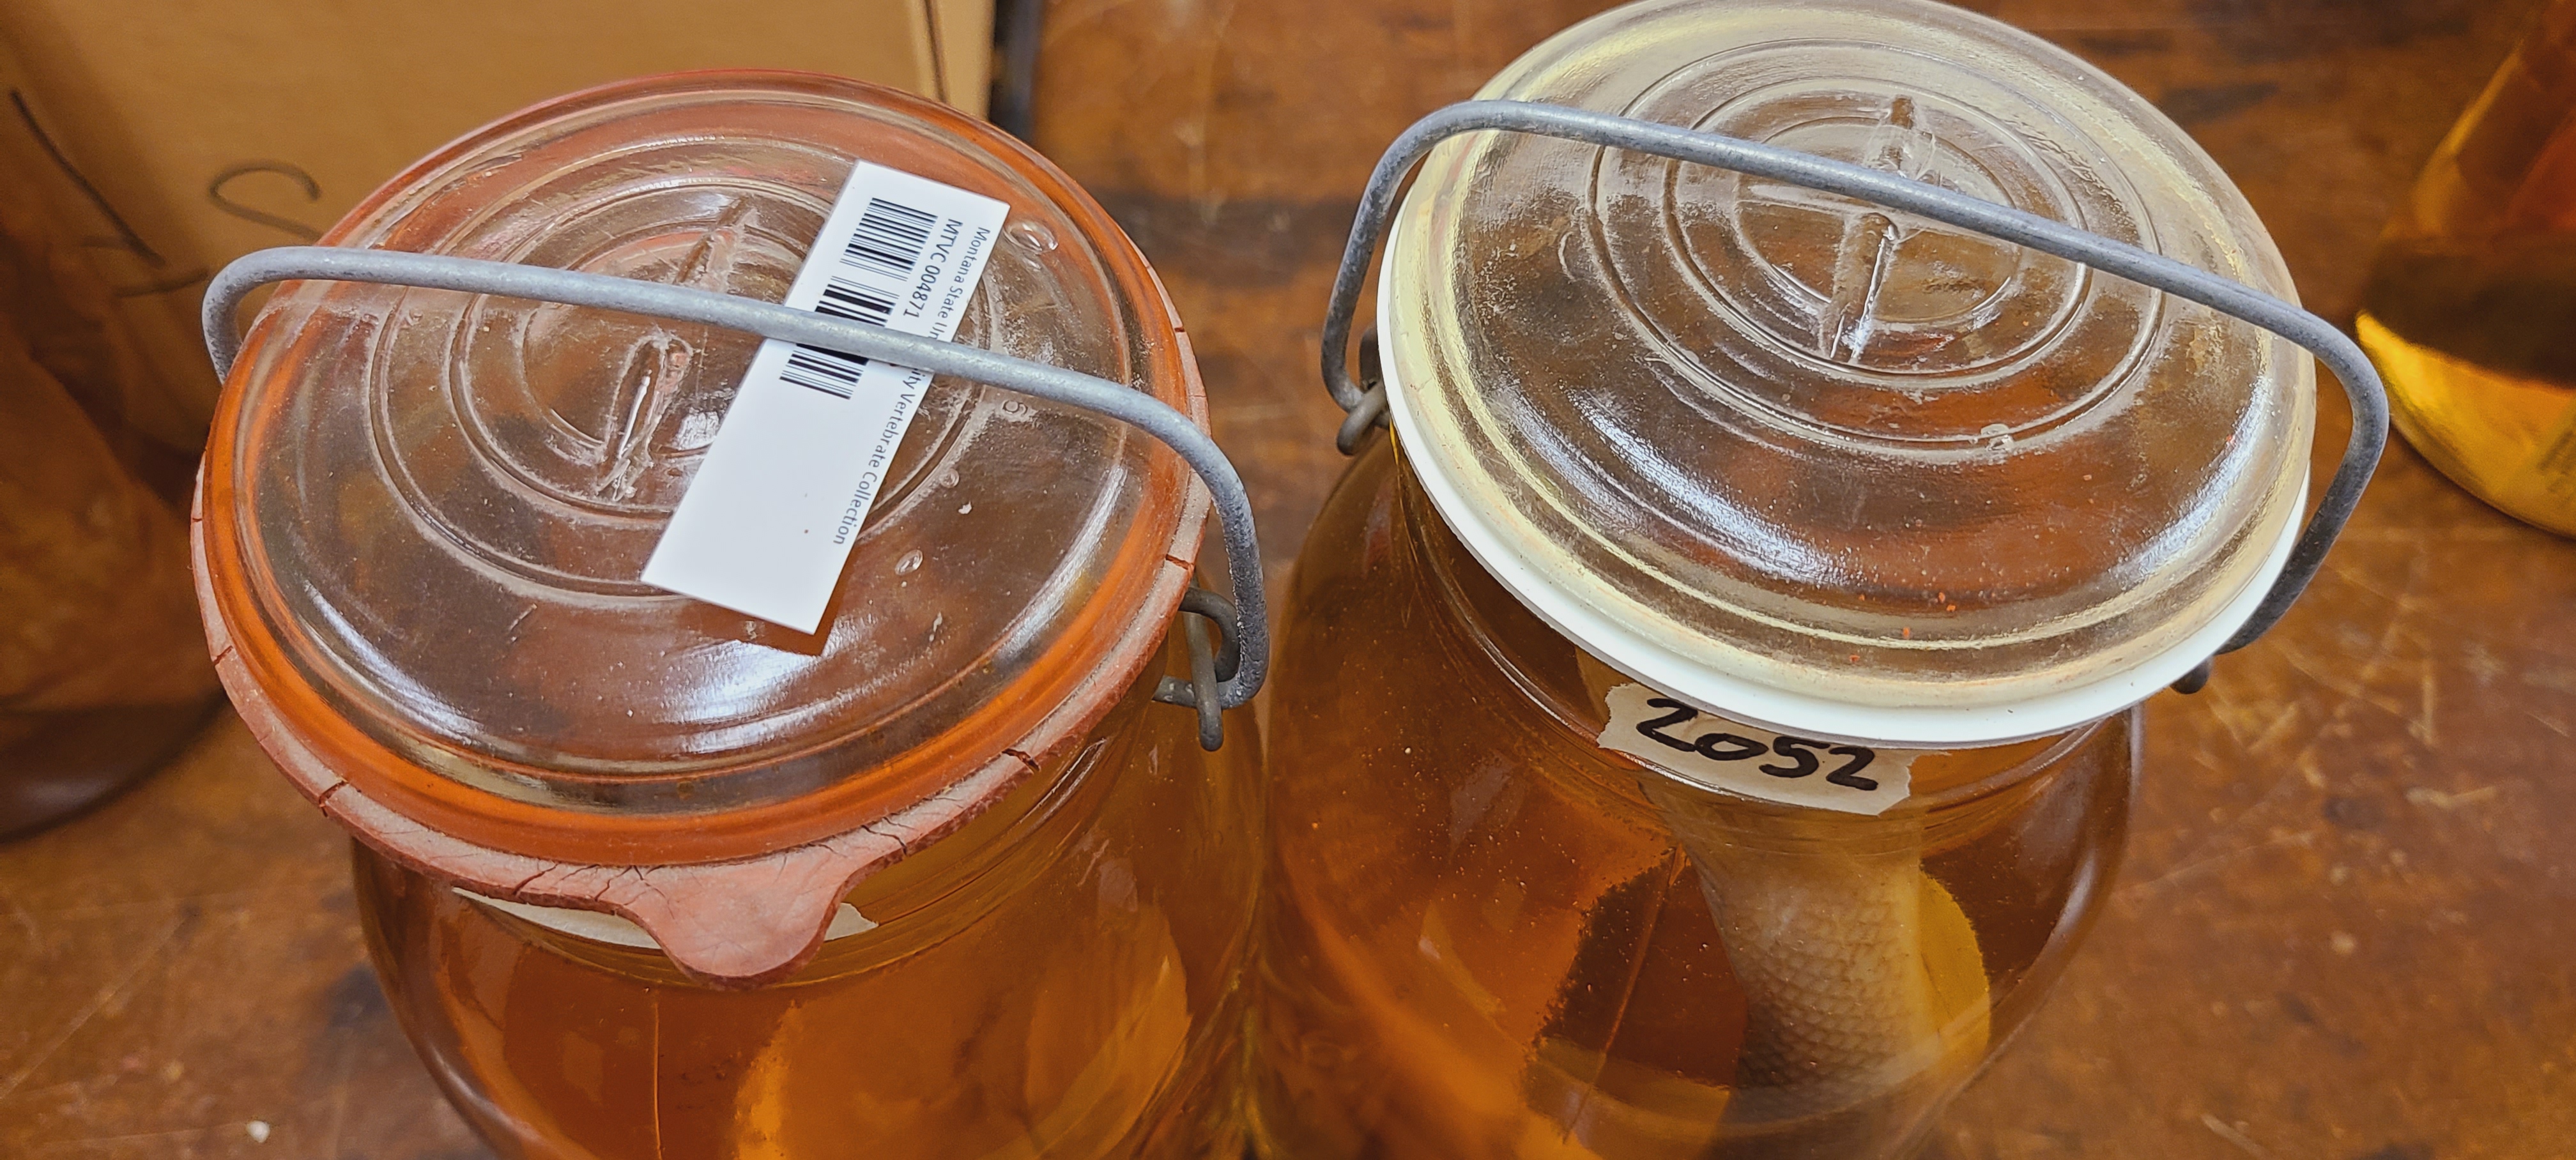 Replacing jar seals